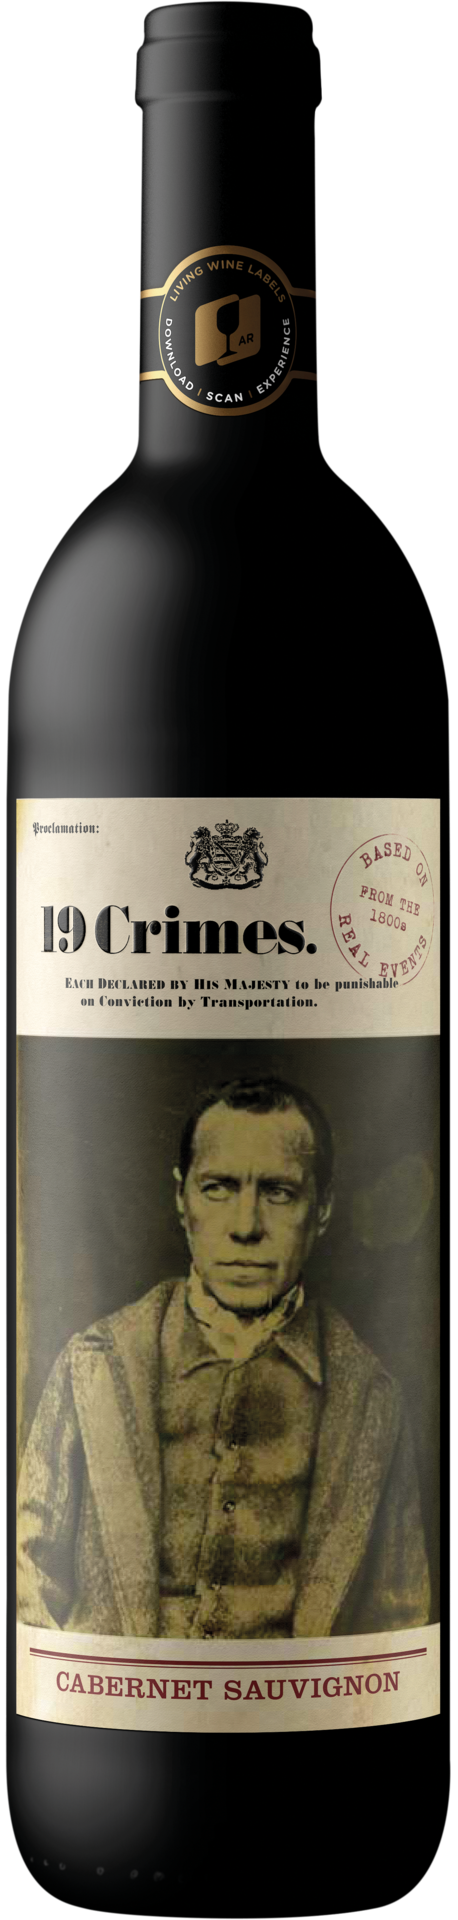 19 Crimes Cabernet Sauvignon 2020 0,75 l** - (7/8)